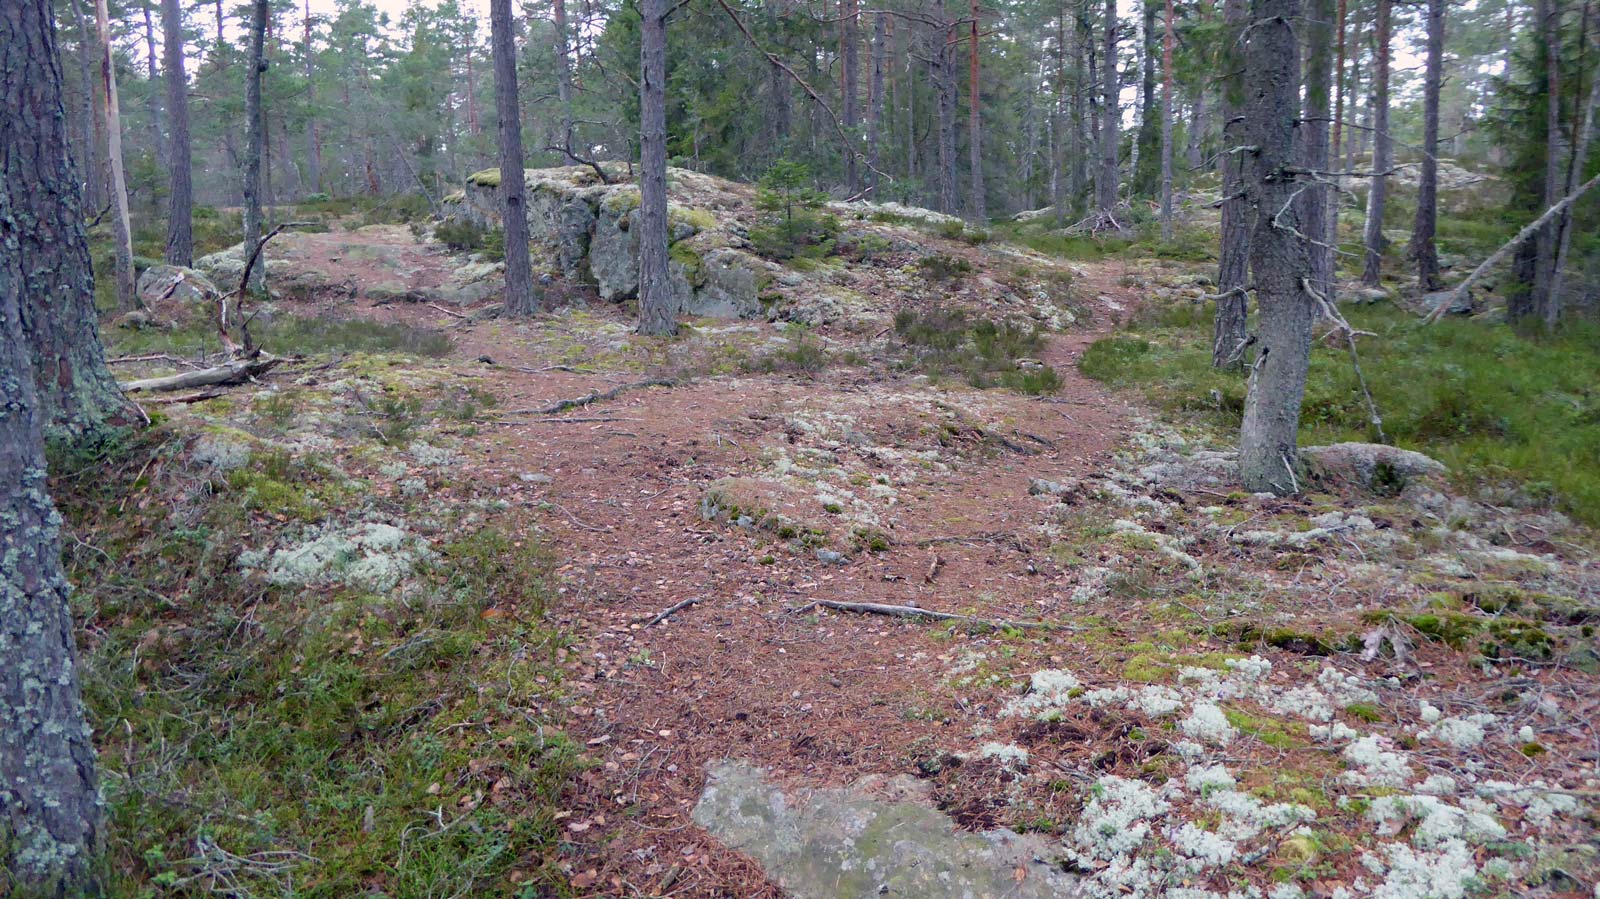 Här delar sig stigen - var uppmärksam på grenen som går till vänster upp över klippan. Den högra stigen leder till Lyckebyn, den vänstra mot Tyresta och Svartbäcken.